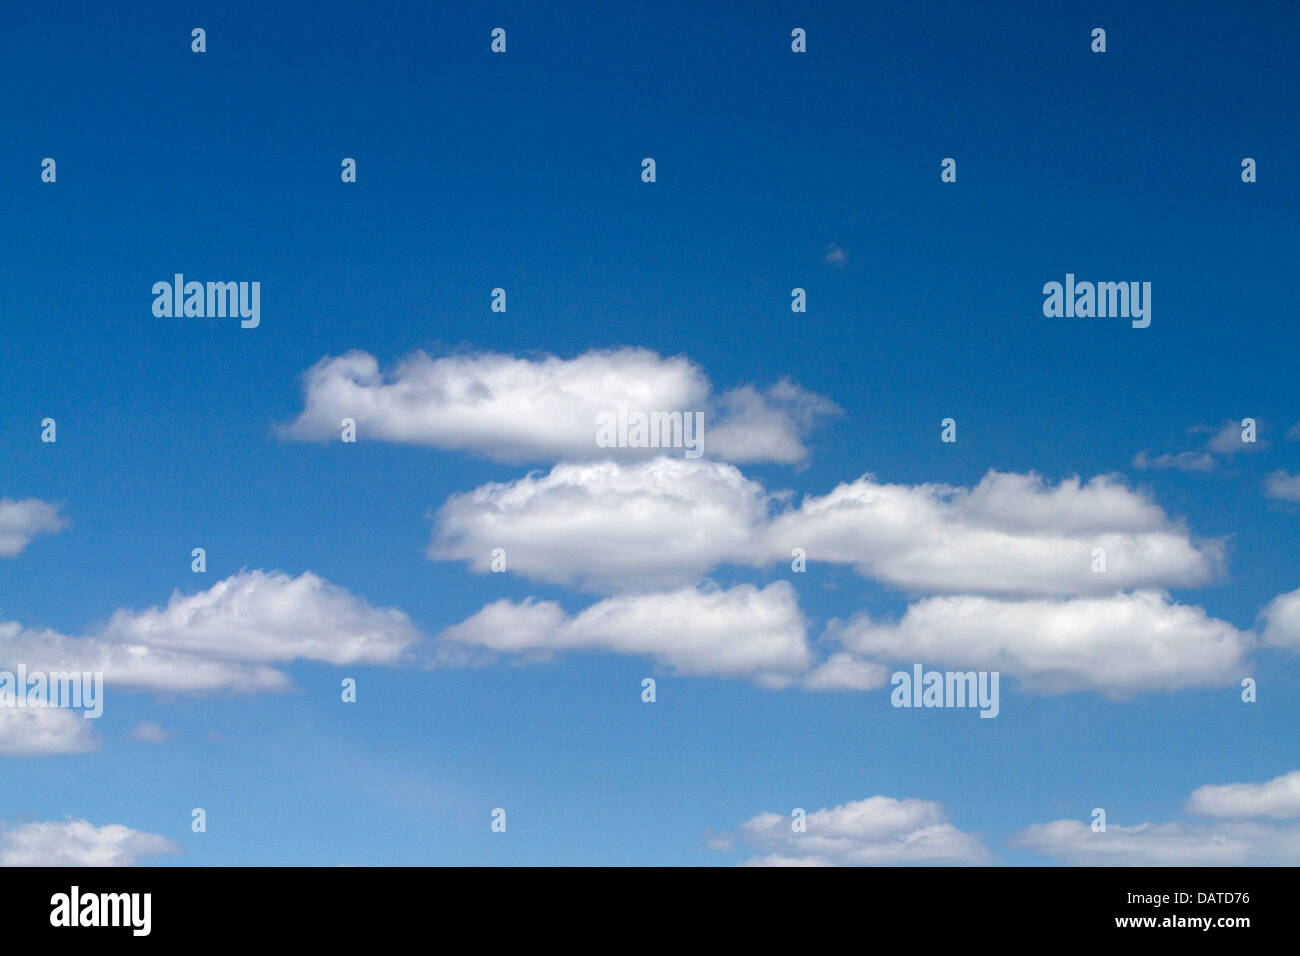 Cumulus clouds in a blue sky. Stock Photo